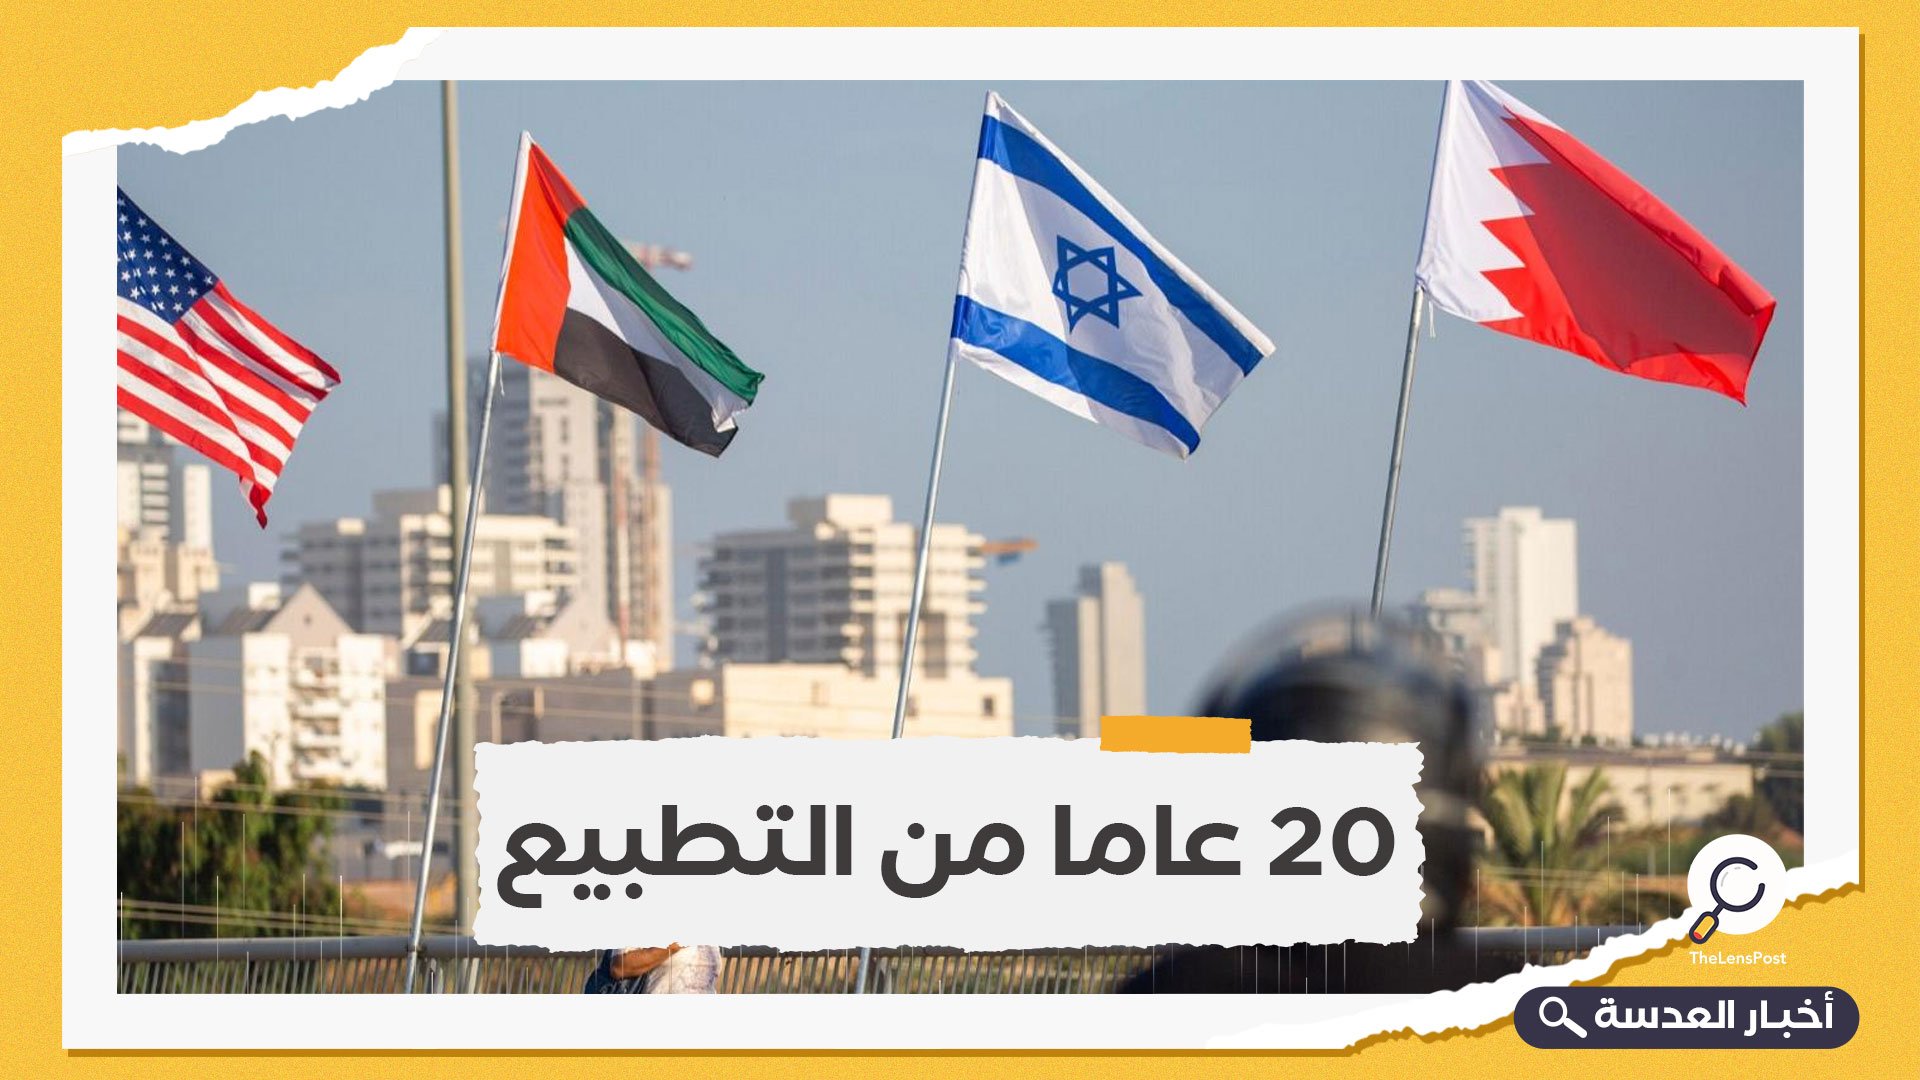 "خدموا بهويات مزيفة.. إسرائيل تكرم 20 دبلوماسيا خدموا سرا في الإمارات والبحرين